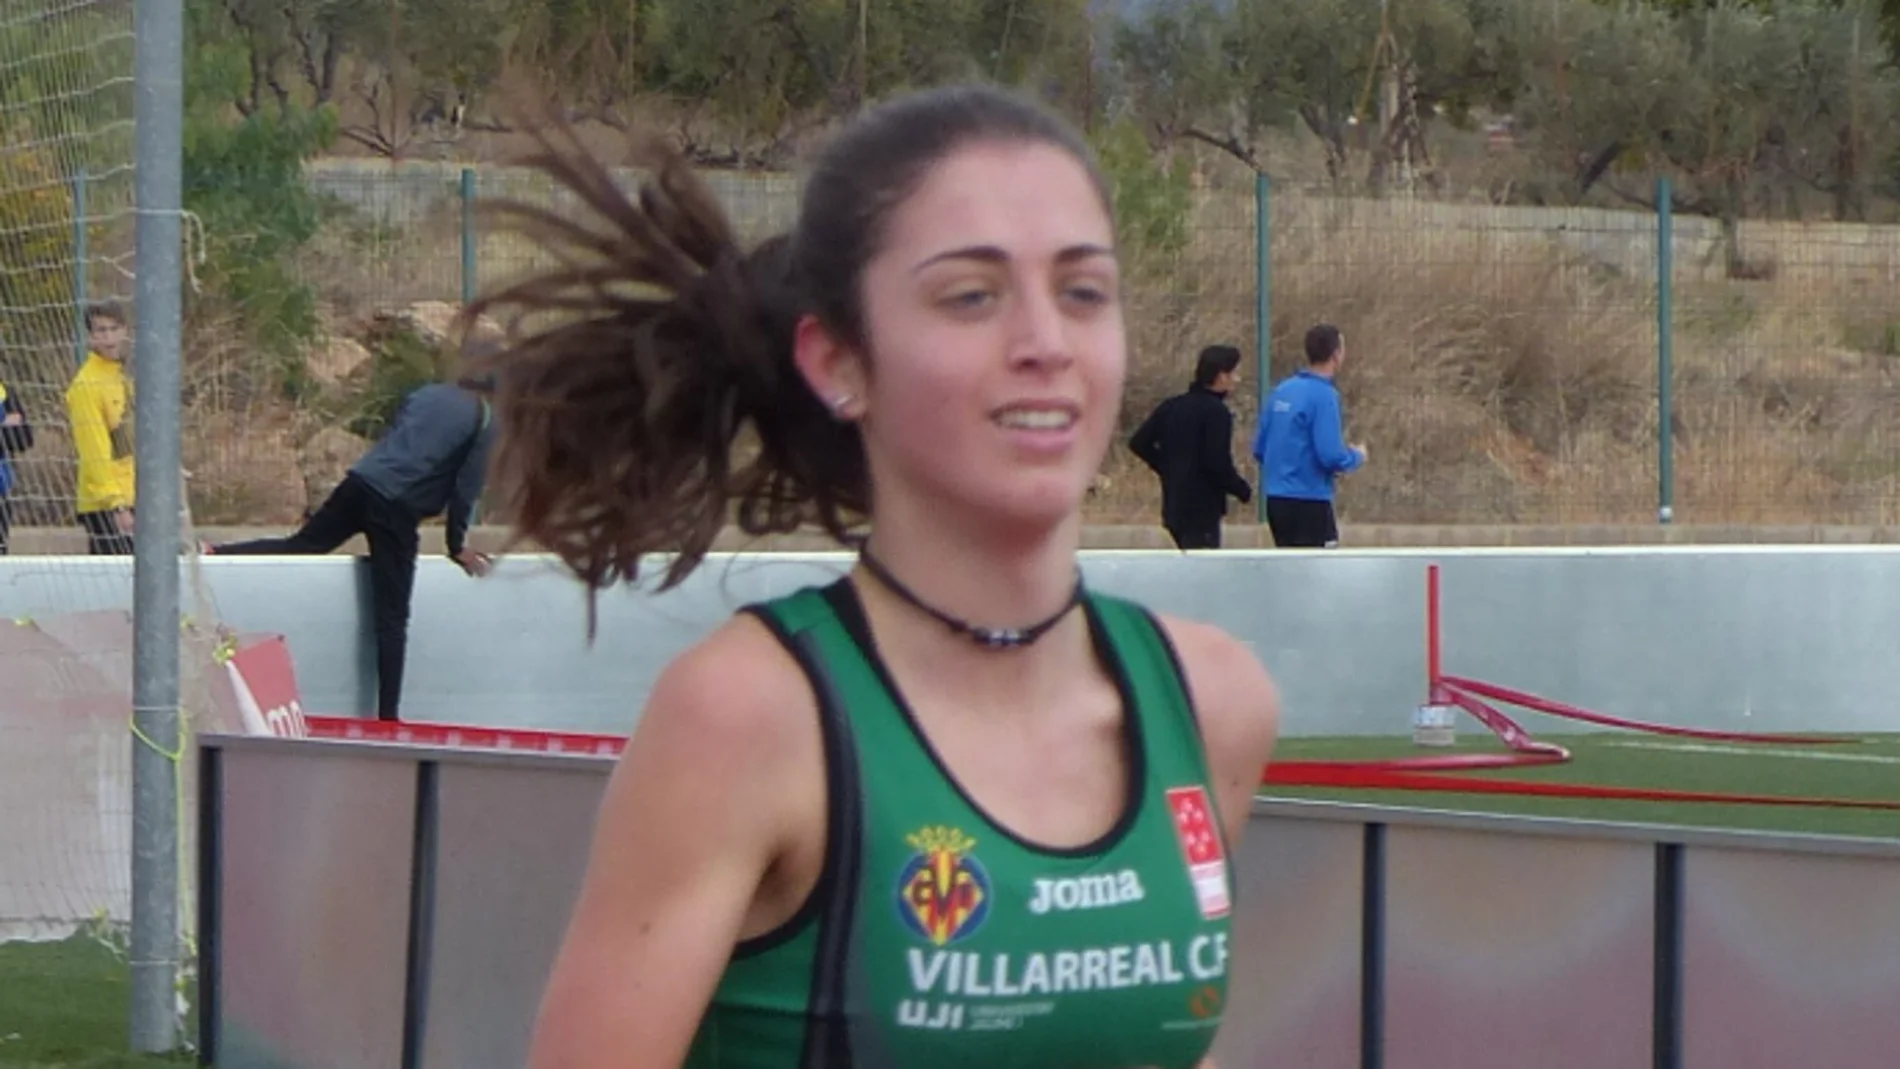 La atleta Alba Cebrián en una imagen facilitada por @atletismoplayas